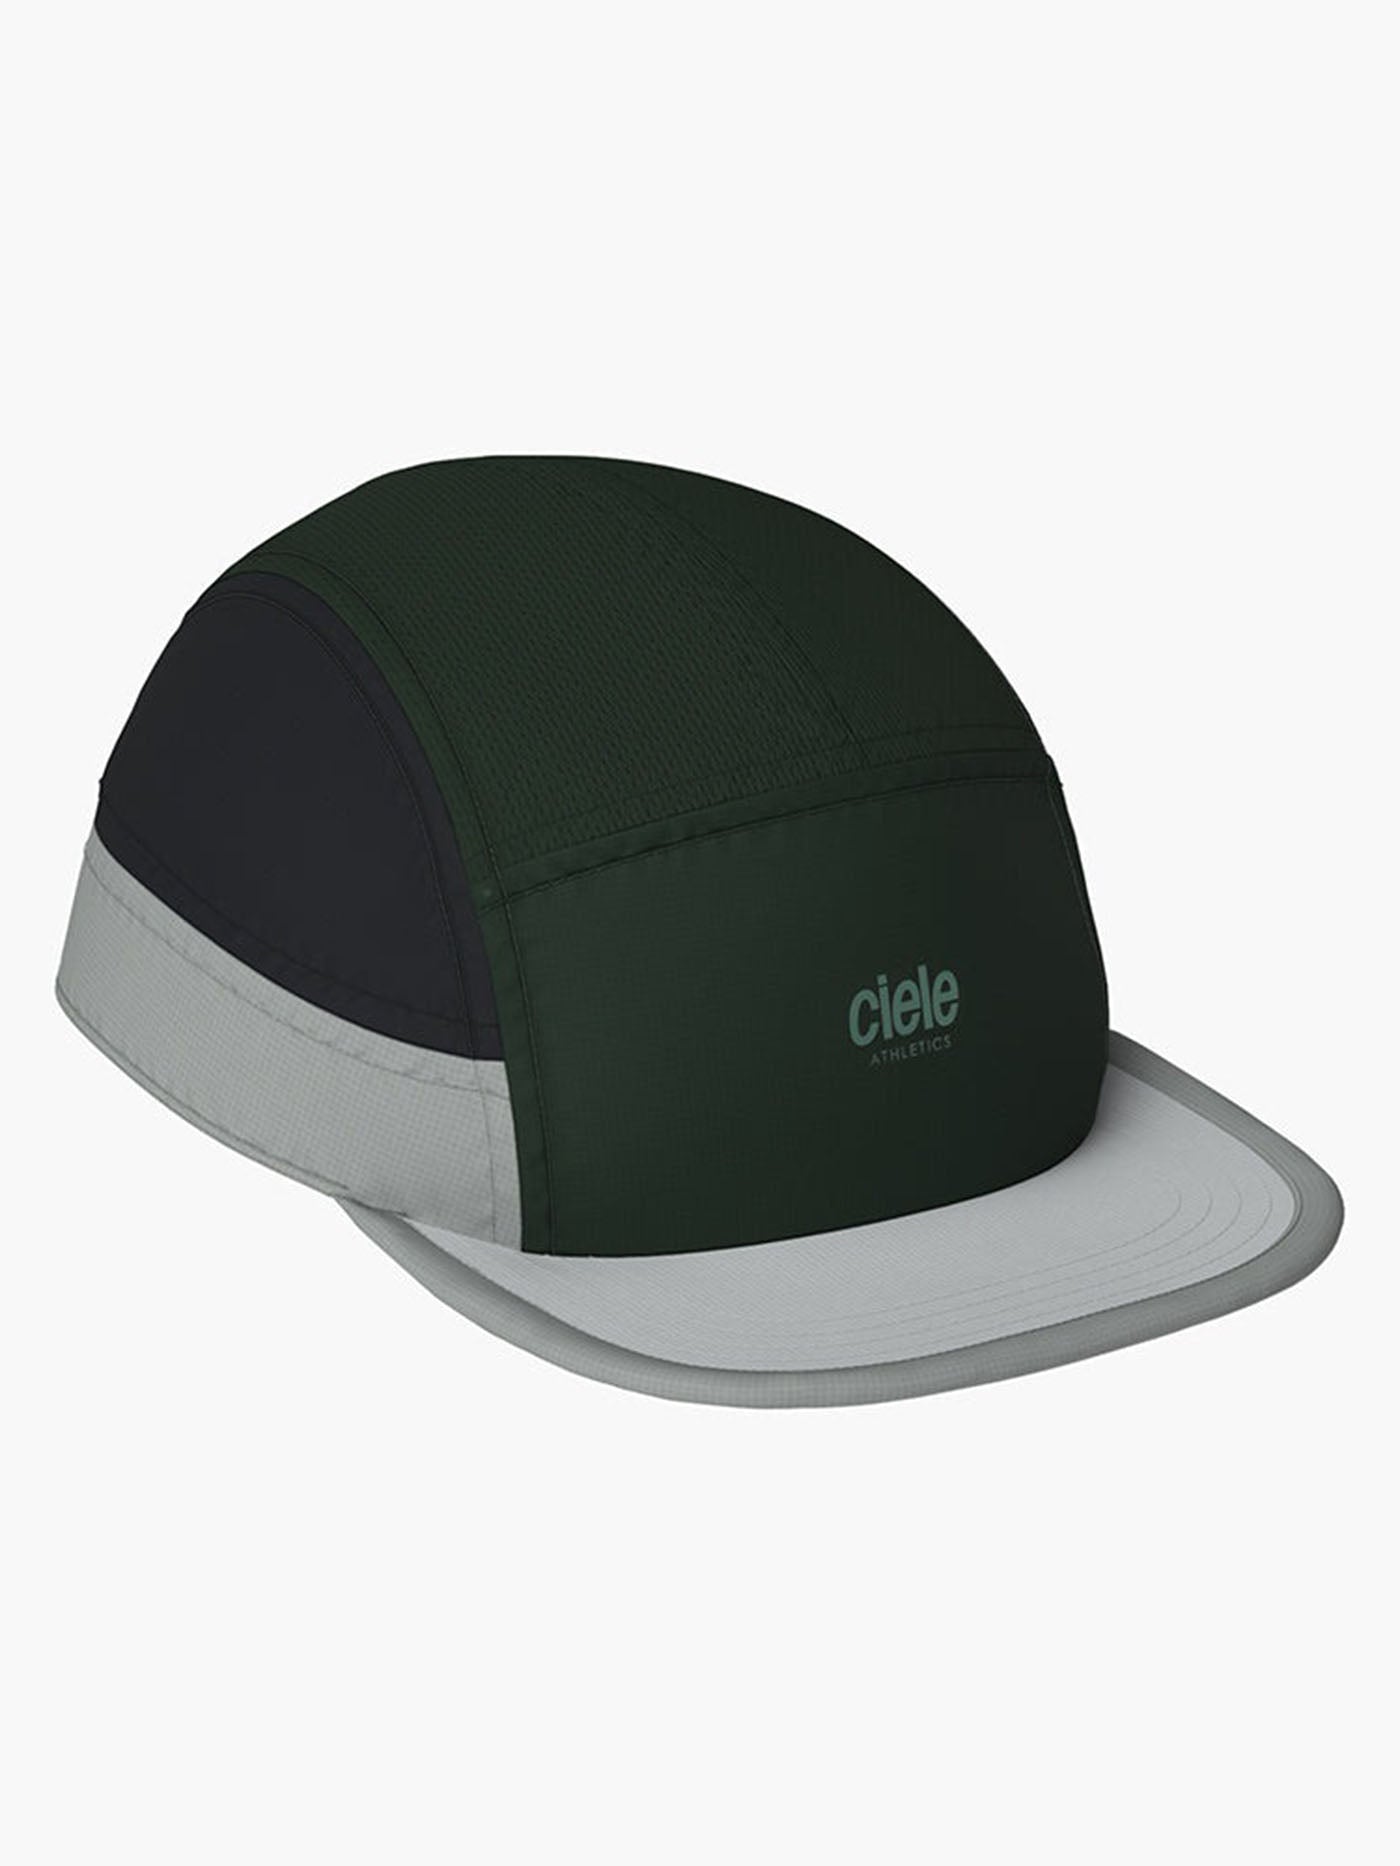 Ciele ALZCap Athletics Small Pourvoir 5 Panel Strapback Hat